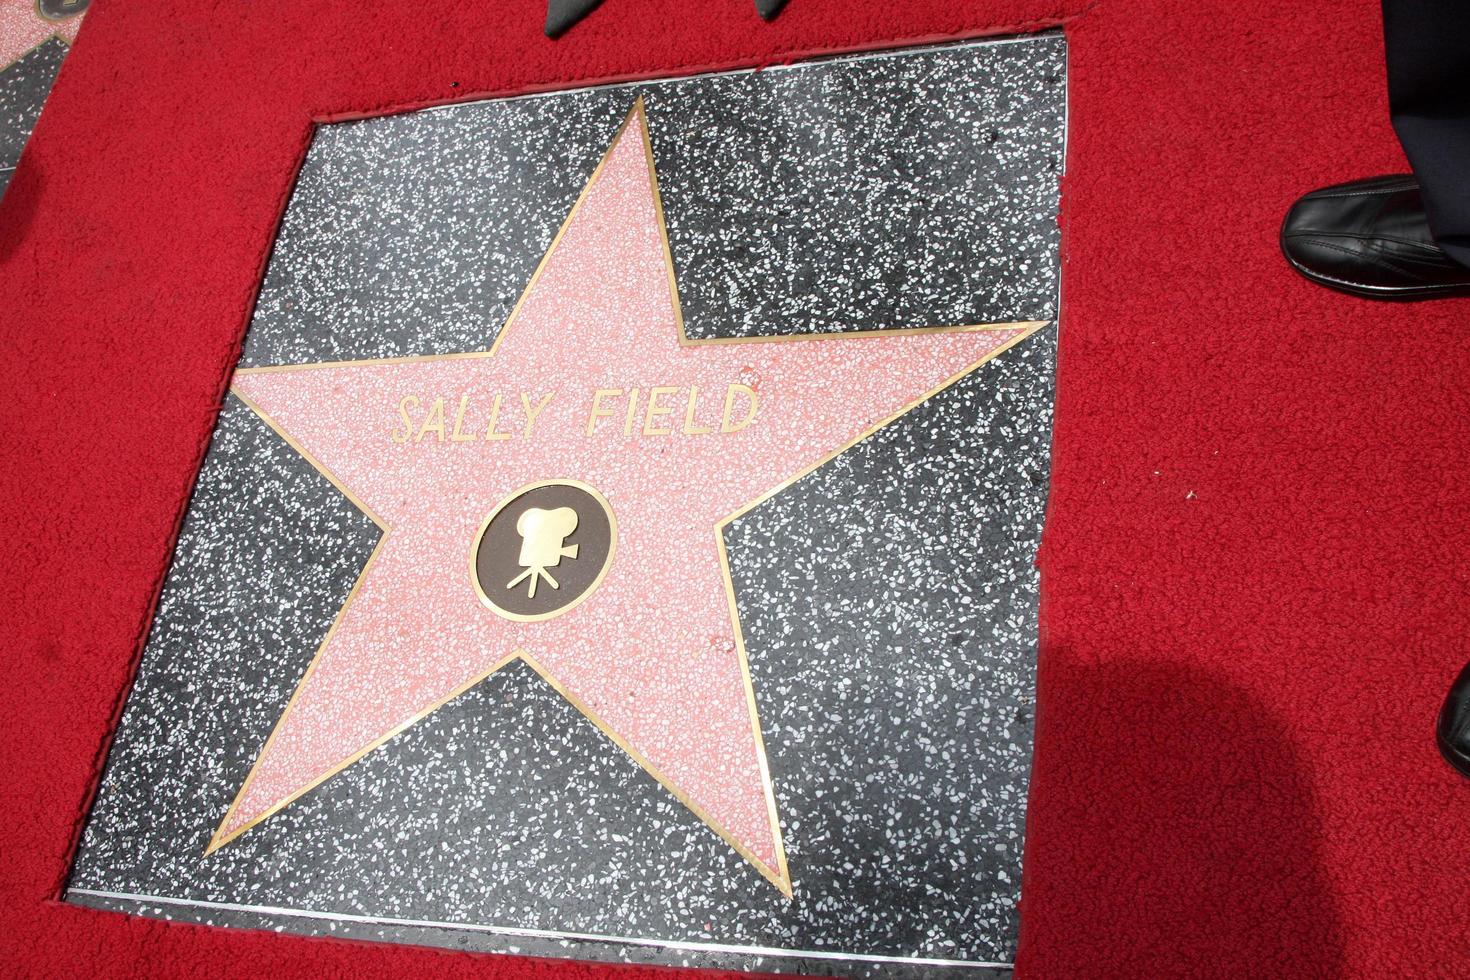 los angeles, 5 mei - sally field star bij de sally field hollywood walk of fame star ceremonie in hollywood wax museum op 5 mei 2014 in los angeles, ca foto